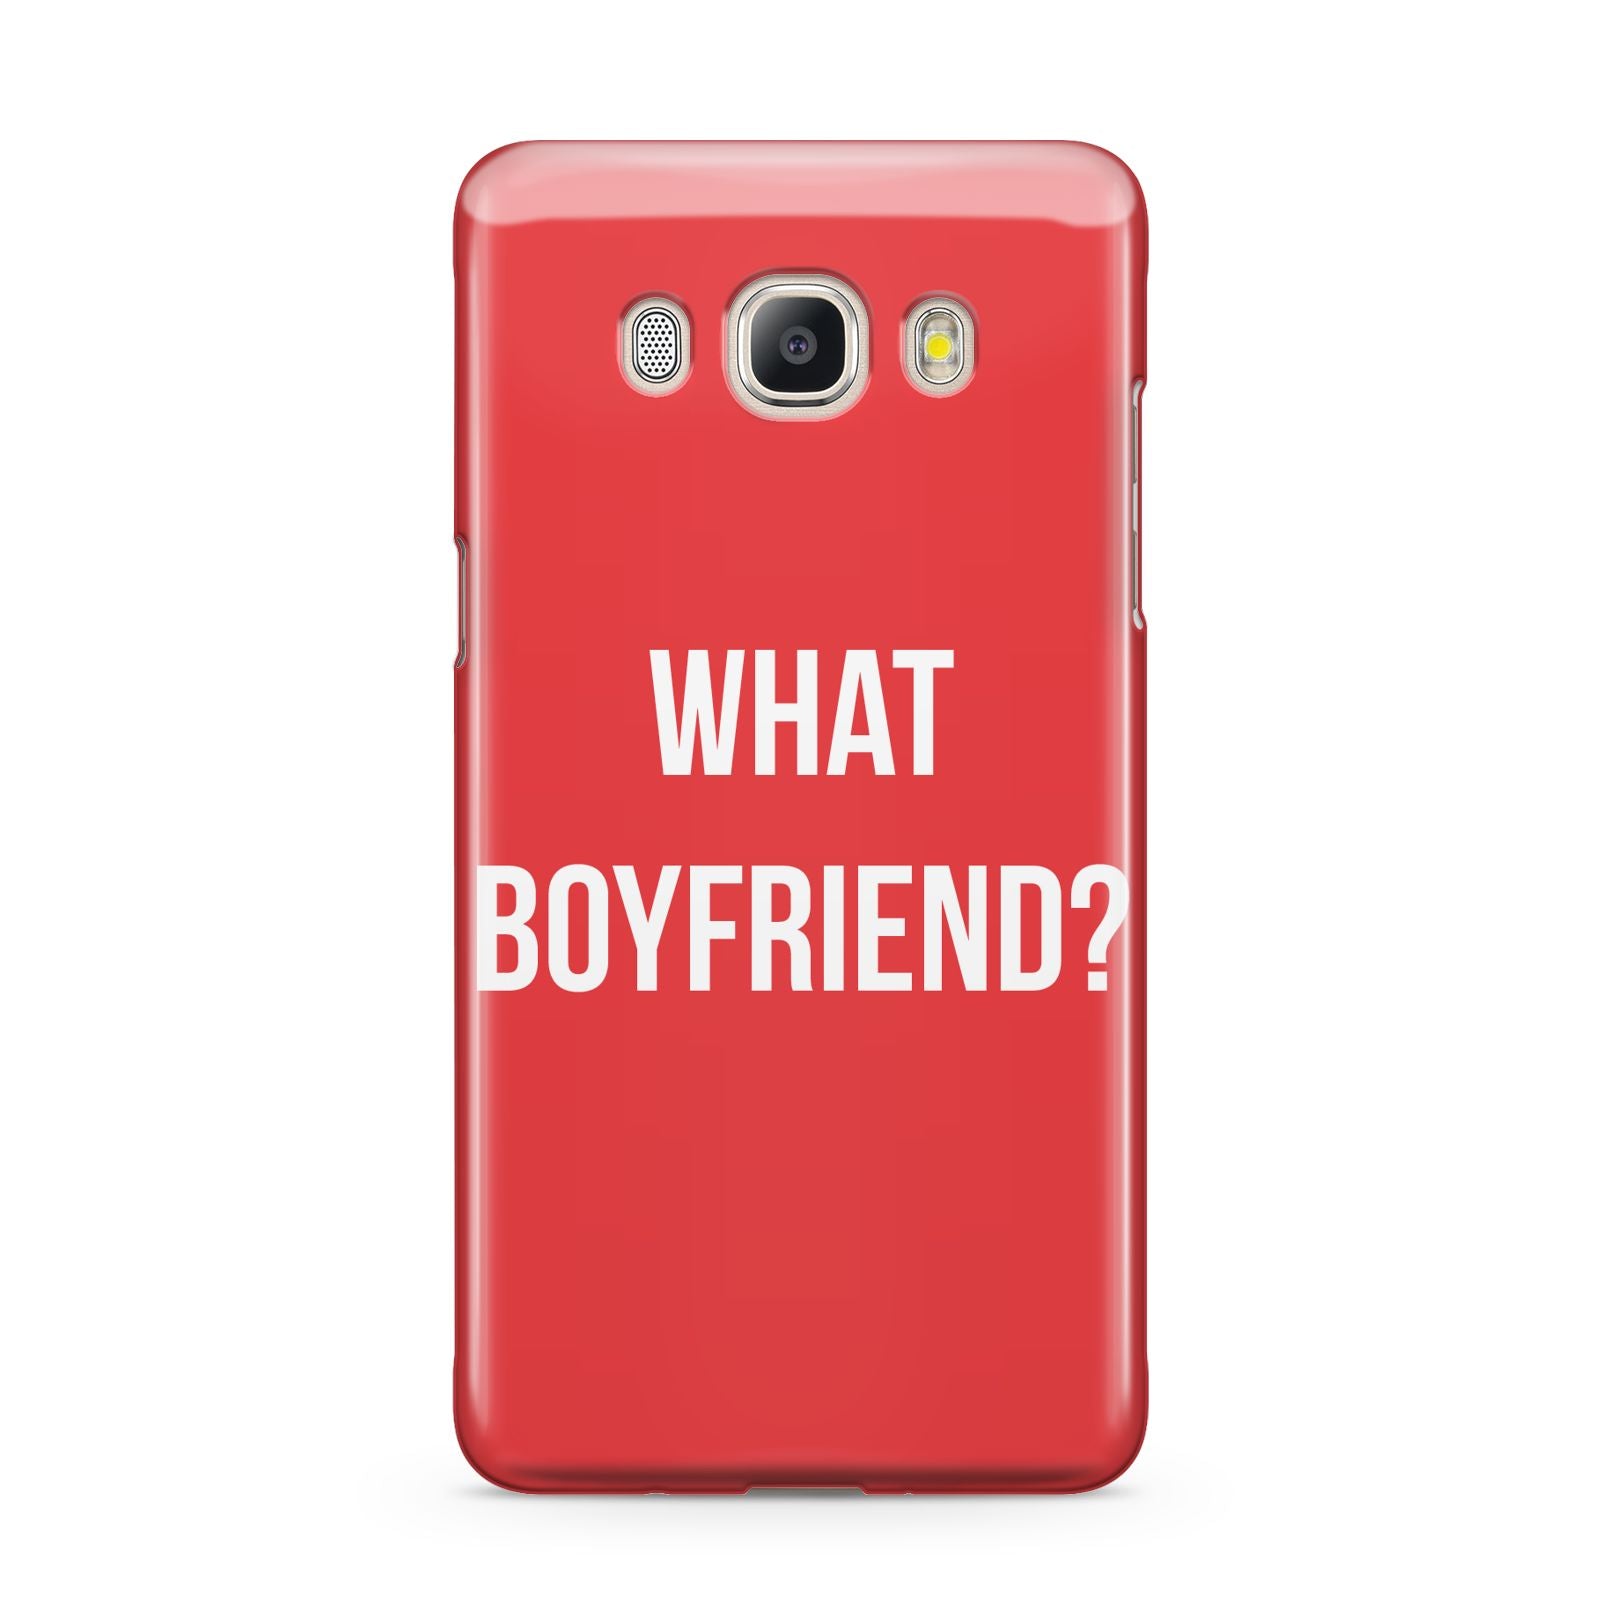 What Boyfriend Samsung Galaxy J5 2016 Case